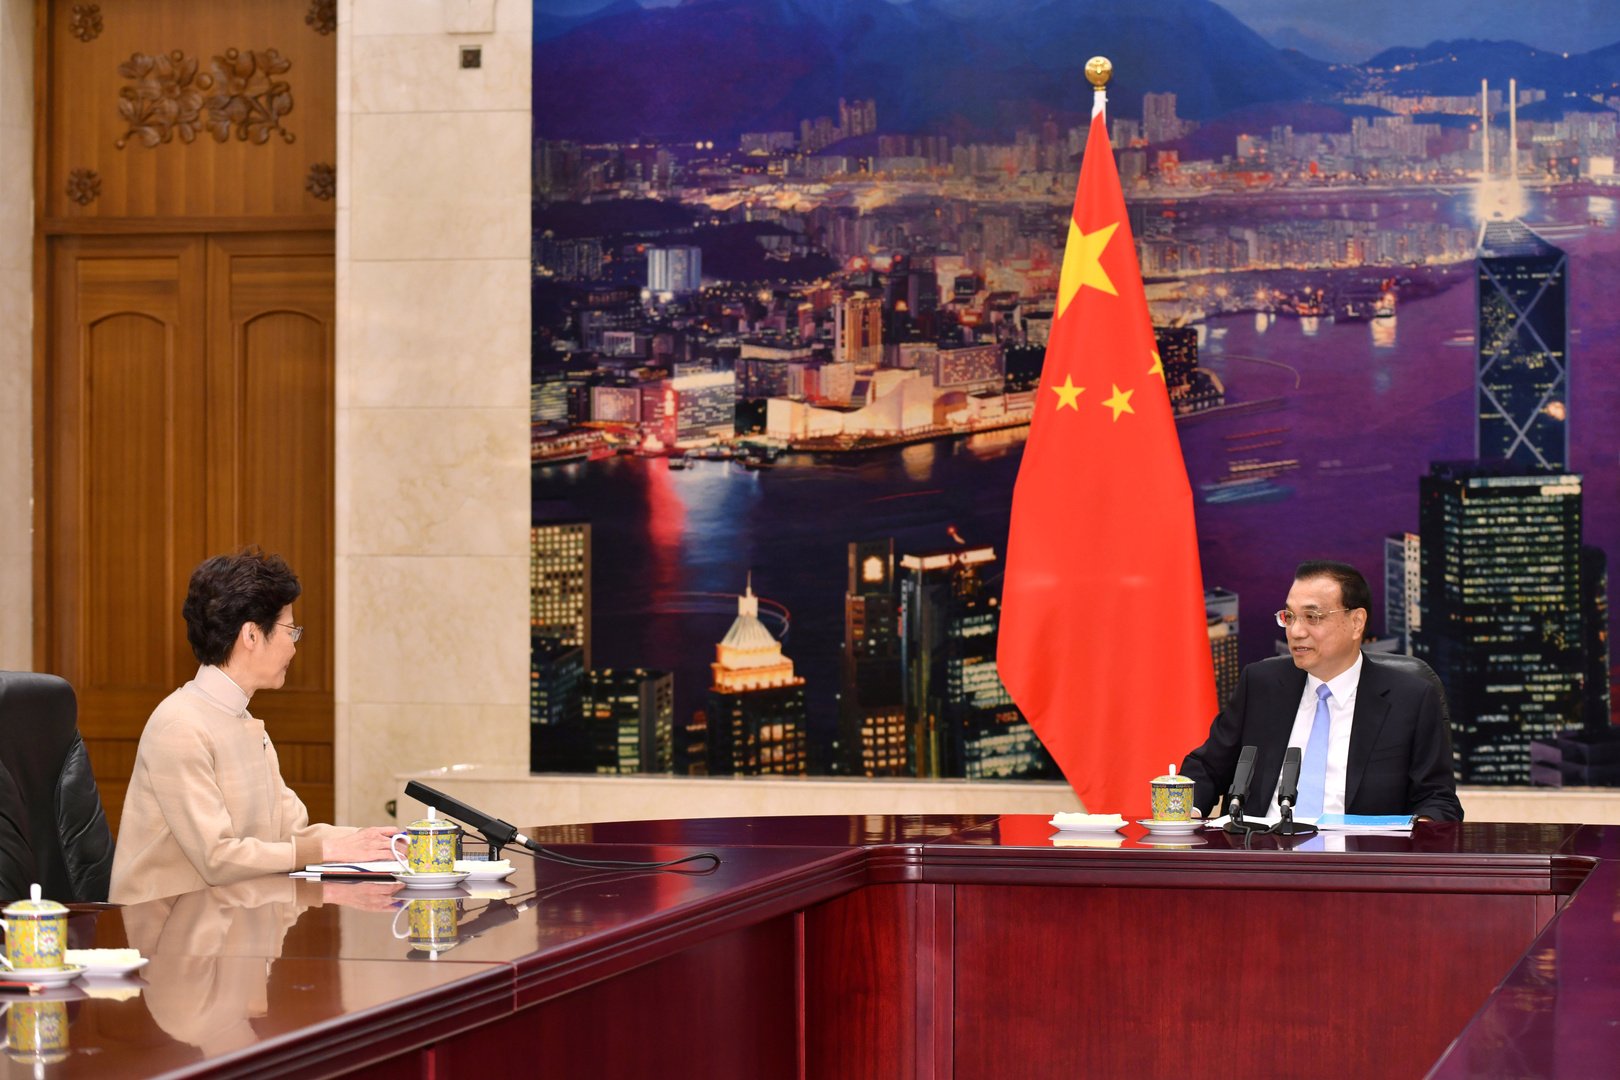 اشتباكات في هونغ كونغ قبيل اجتماع بين زعيمة المدينة والرئيس الصيني